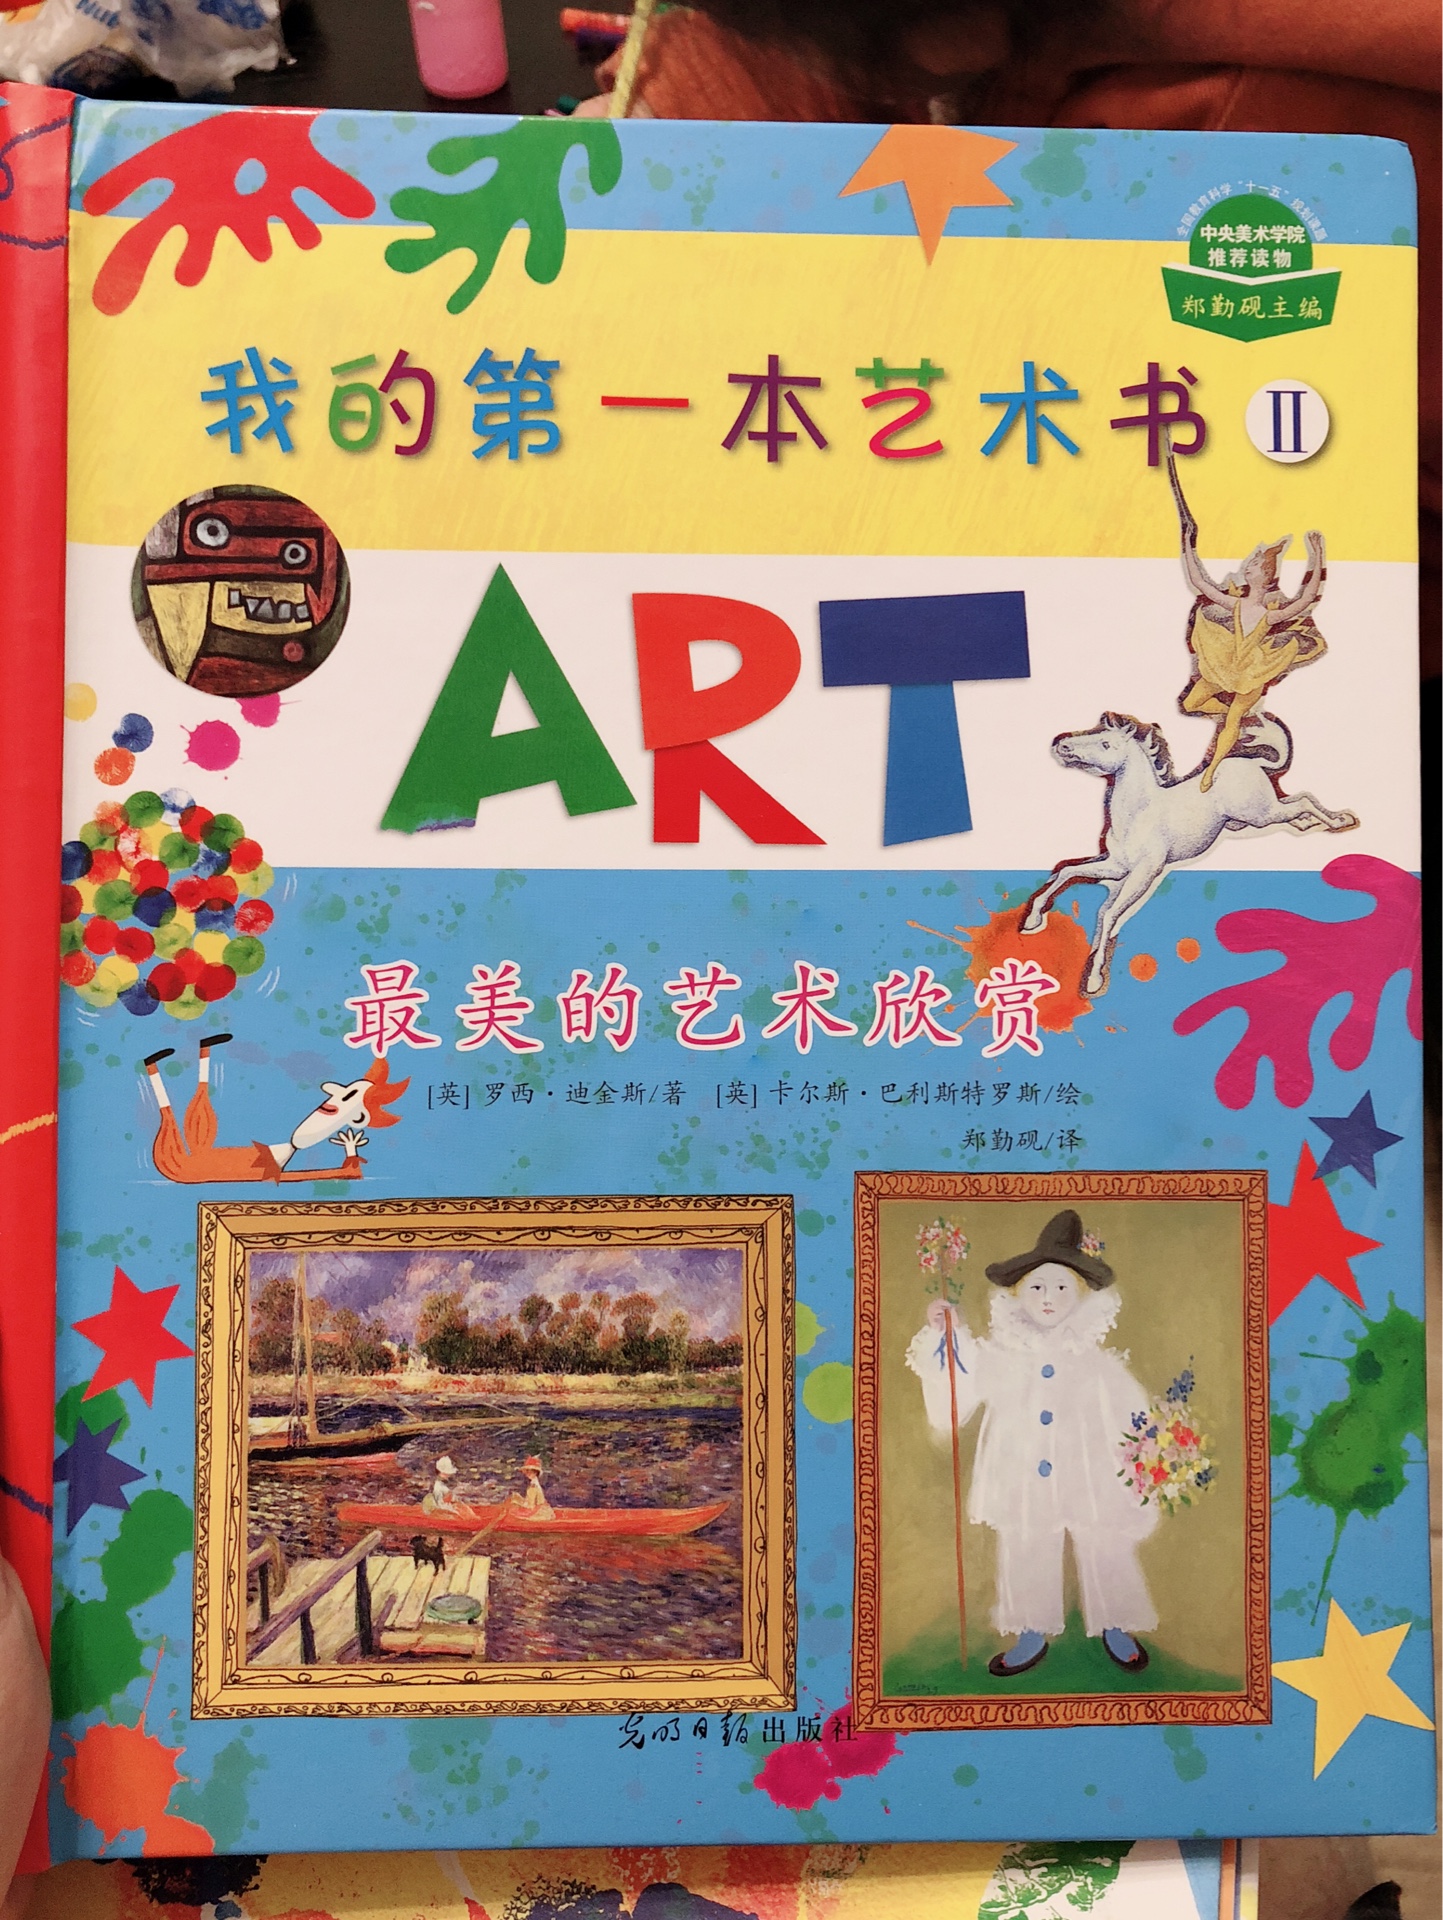 很值得入手的一套艺术书，即启蒙了对艺术的鉴赏，还融合了游戏，大大提高了孩子的兴趣，大人也会觉得有趣。另外，包装特别好，快递也很快！值得推荐，所以评价！